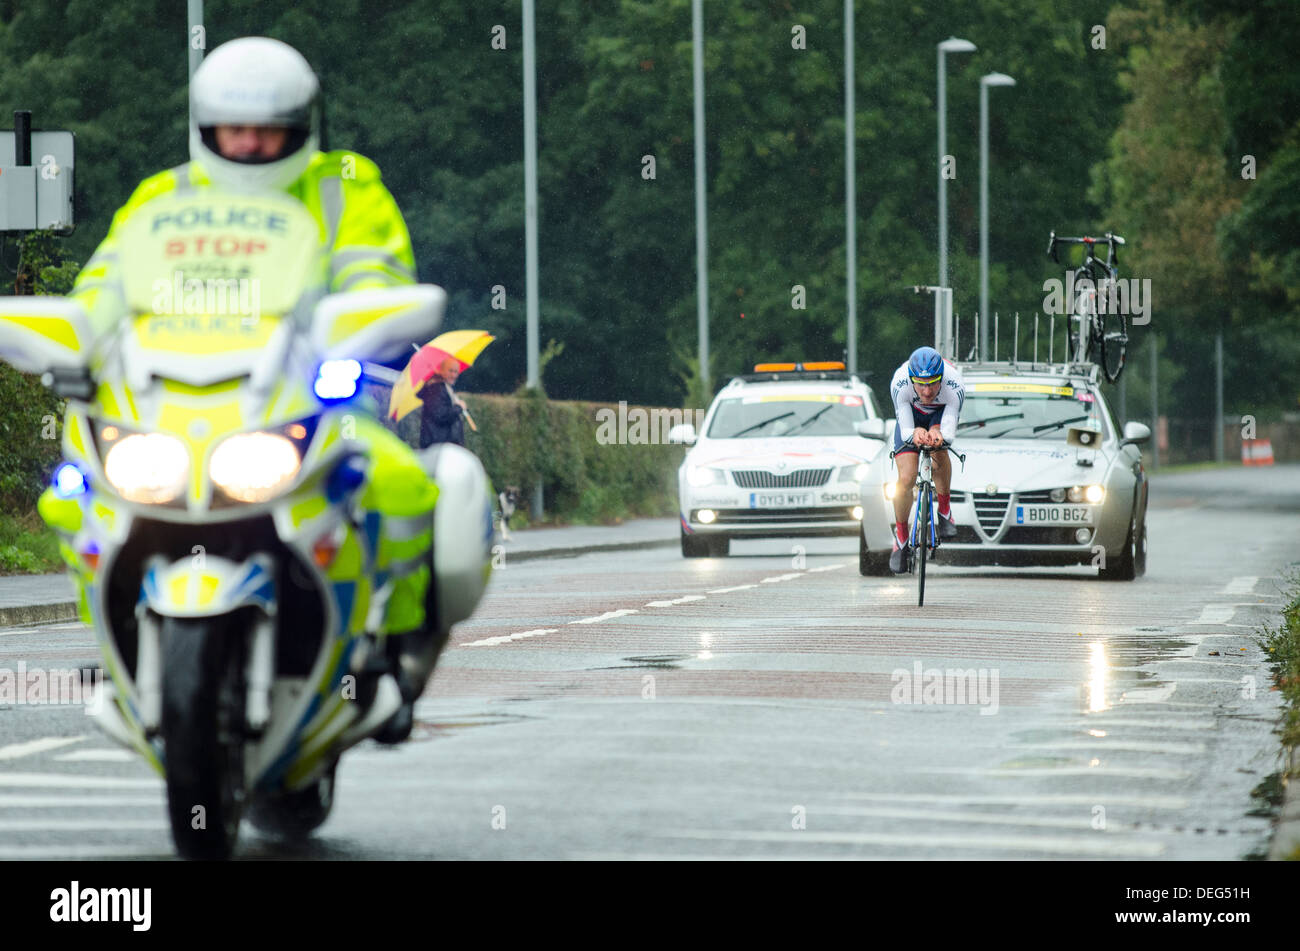 Équitation dans l'étape 3 de la Tournée 2013 de la Grande-Bretagne, un 16km contre-la-montre individuel à Knowsley, Merseyside Banque D'Images